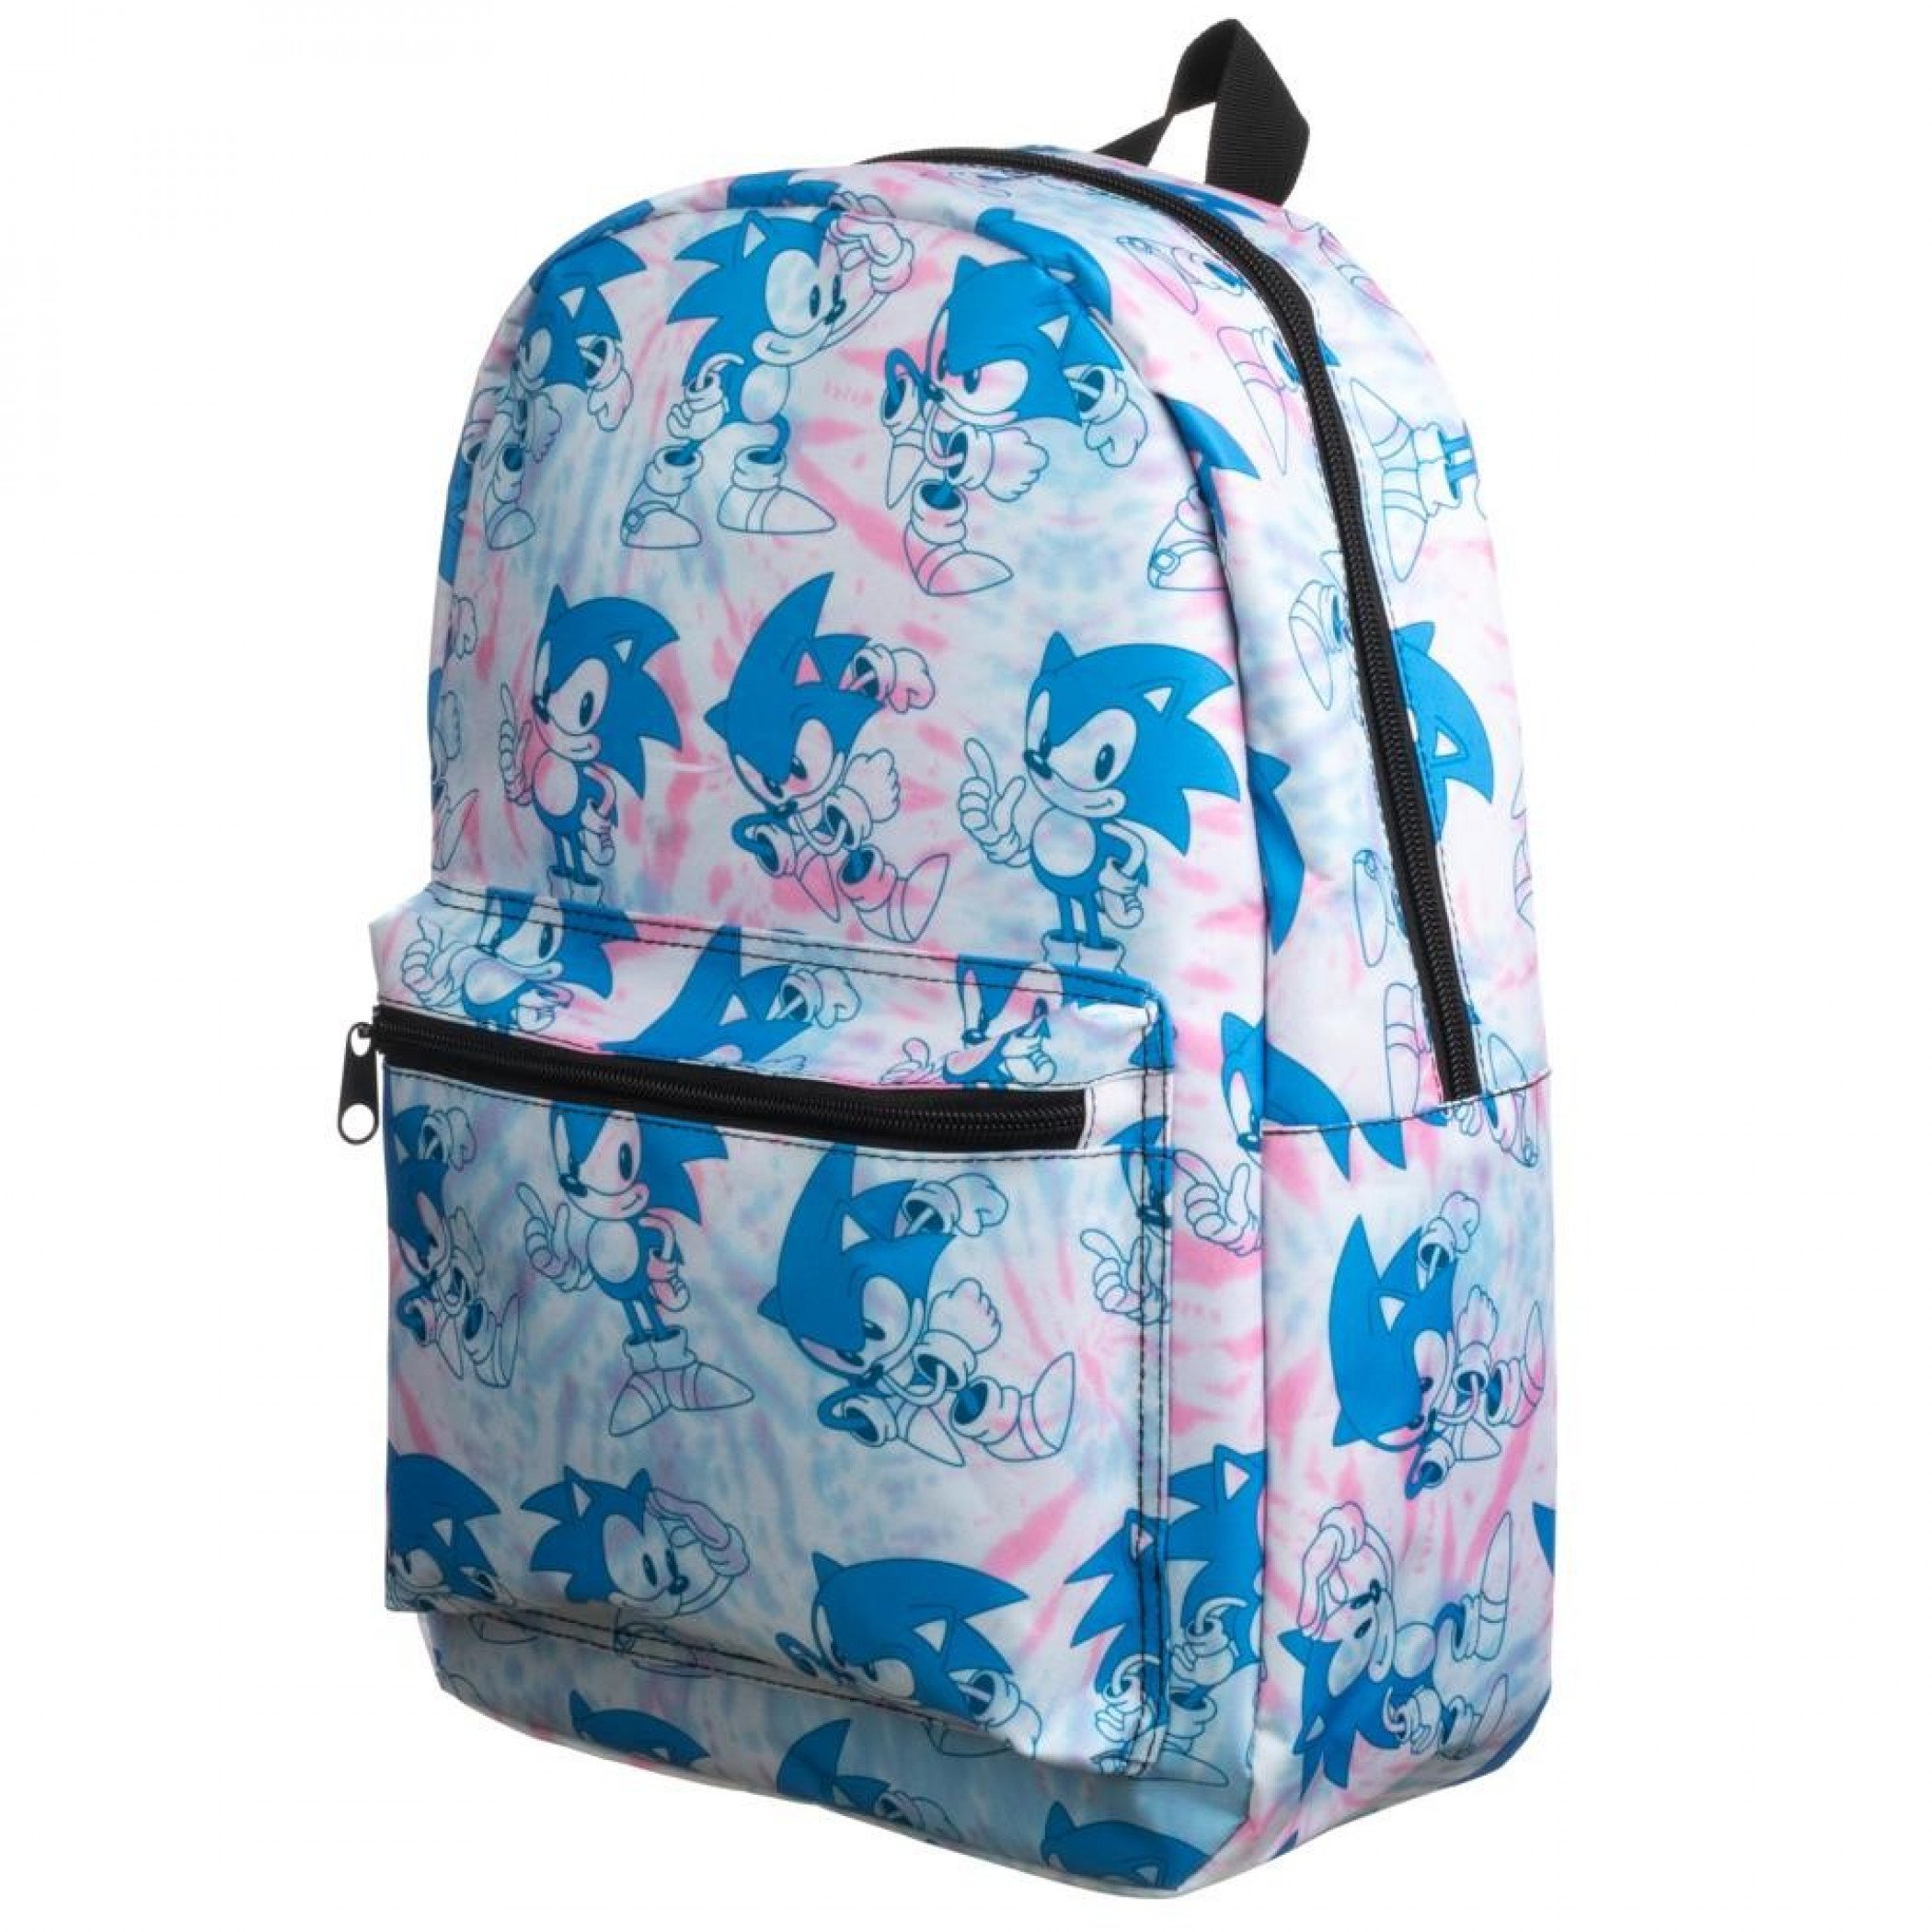 Sonic The Hedgehog Tye Dye Quick Turn Backpack